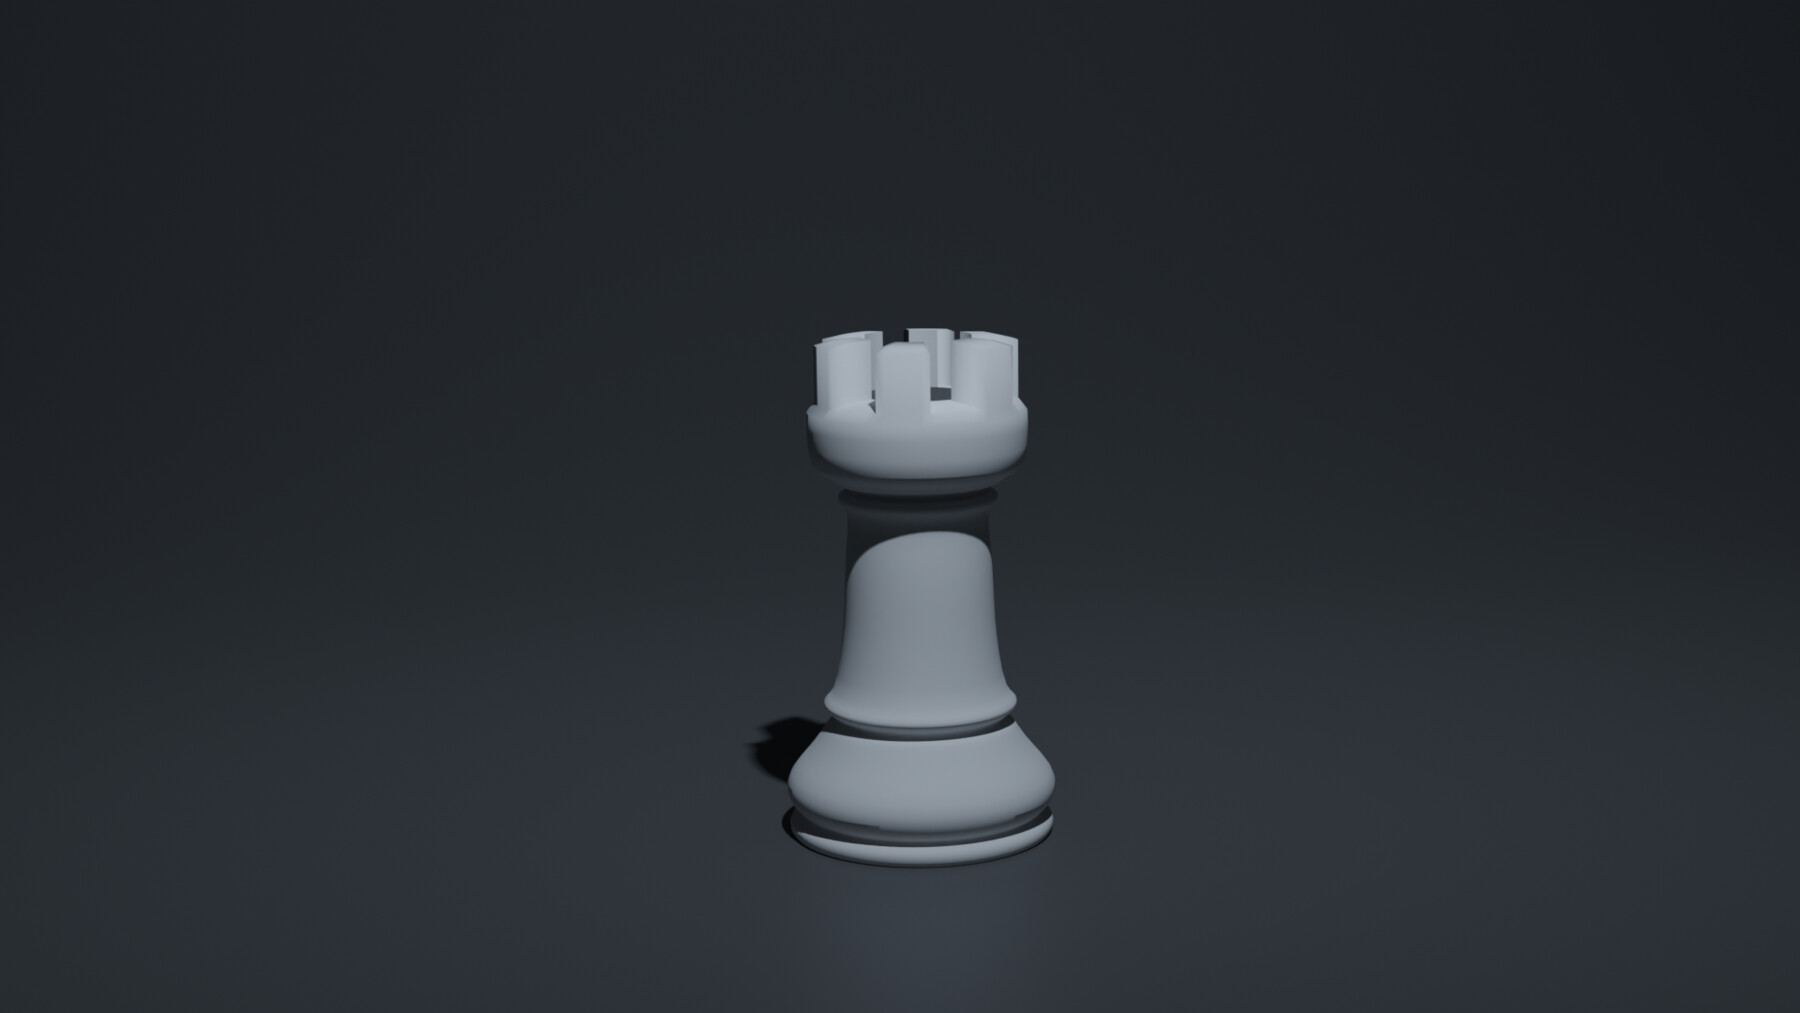 El Ajedrez 3D Chess Set